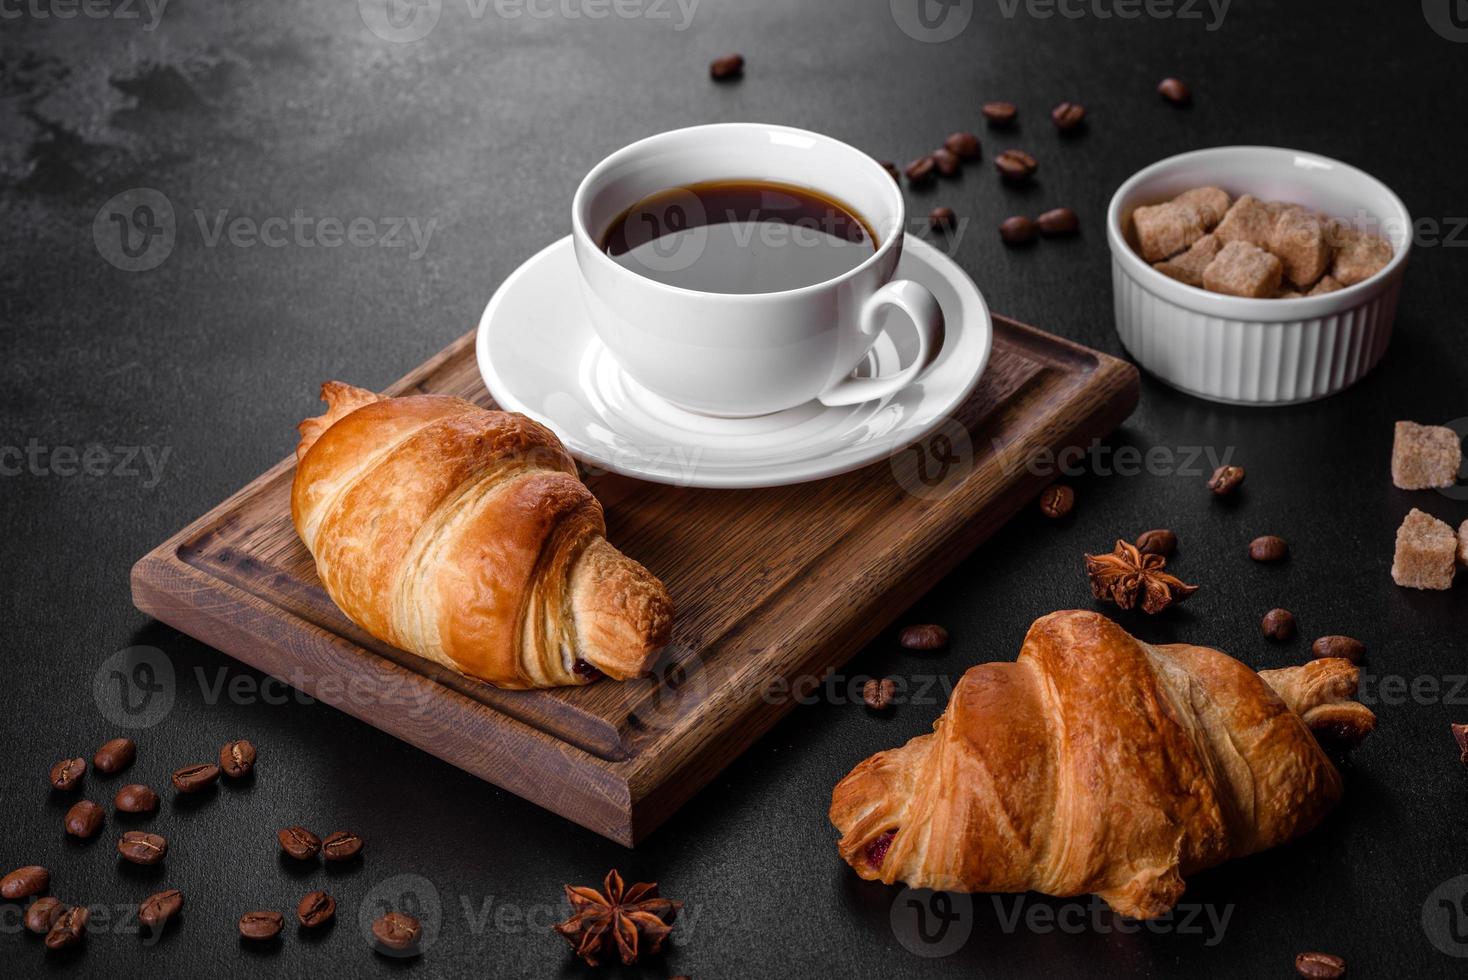 frisches knackiges leckeres französisches Croissant mit einer Tasse duftendem Kaffee foto